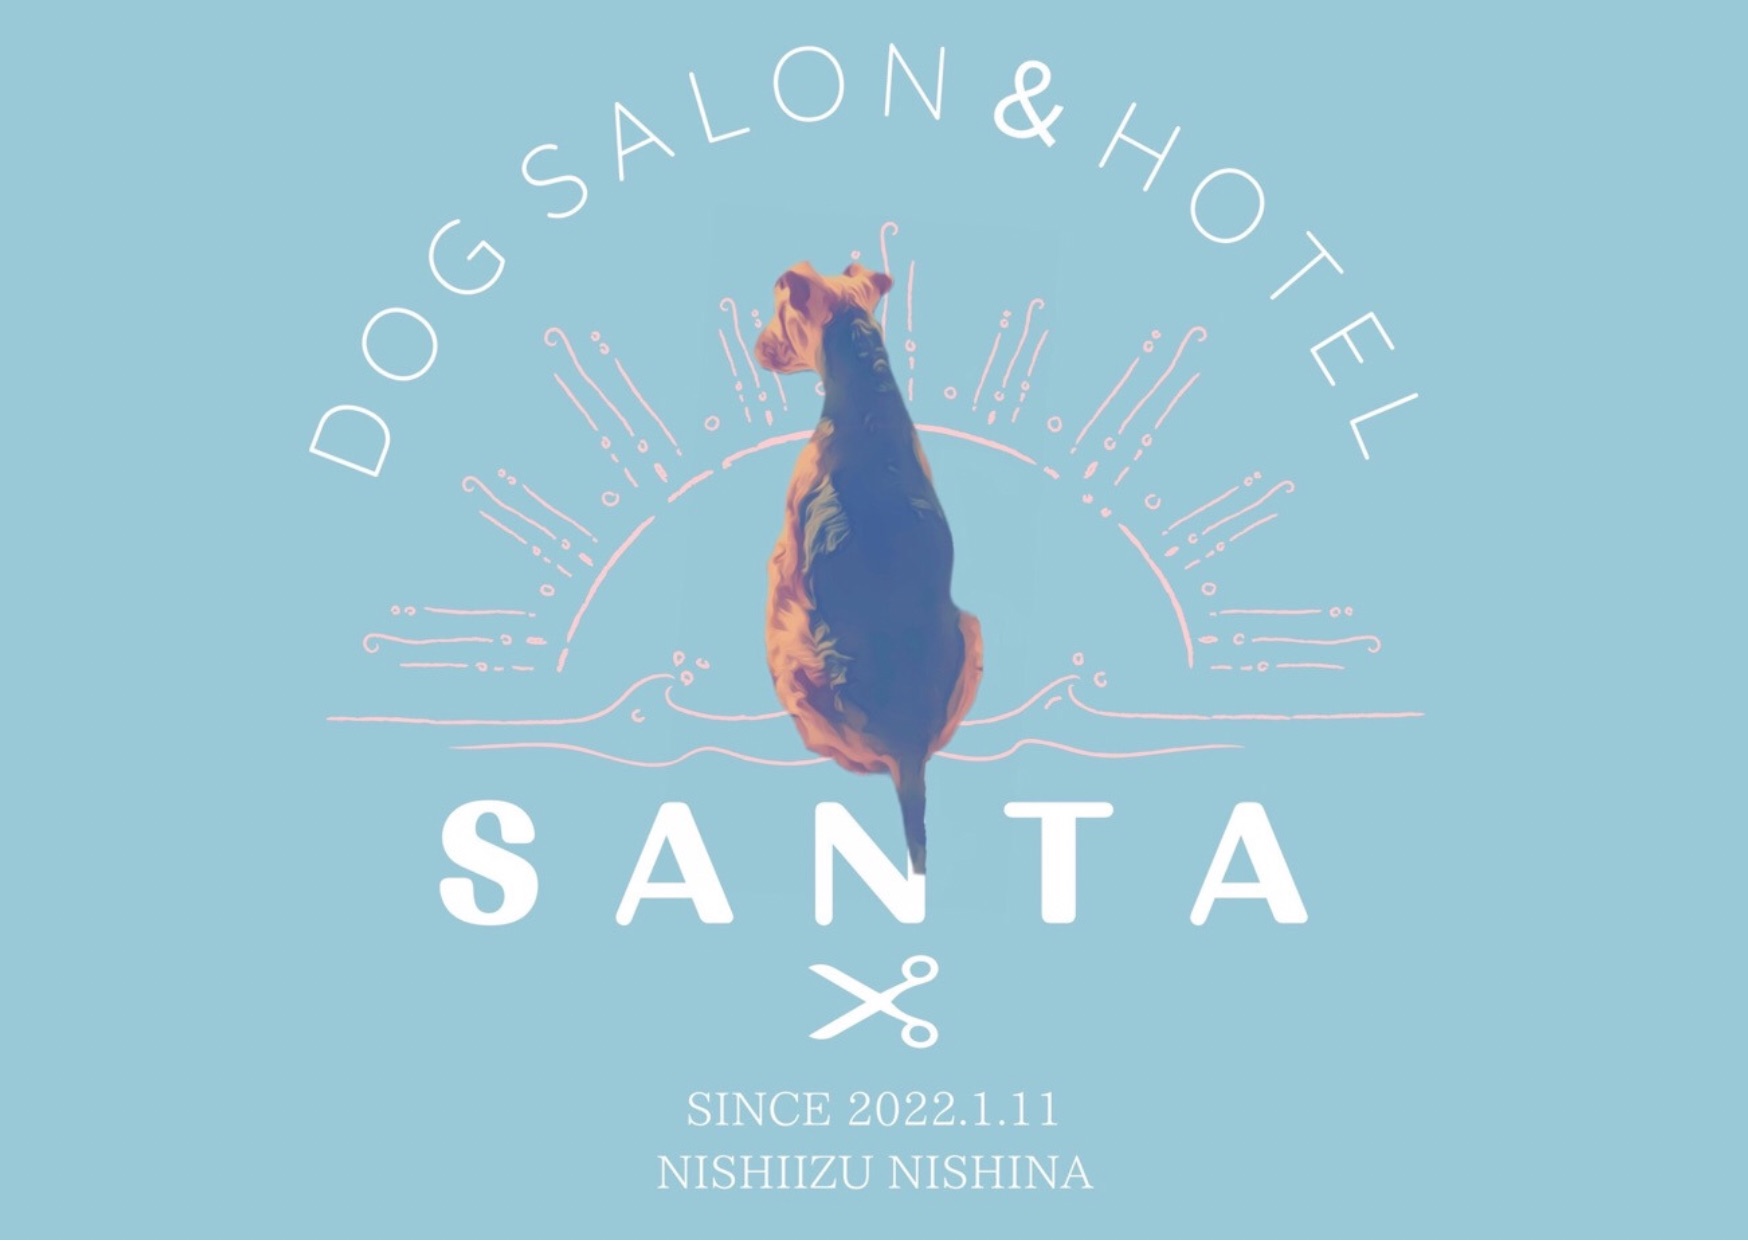 Dog salon & Hotel SANTA